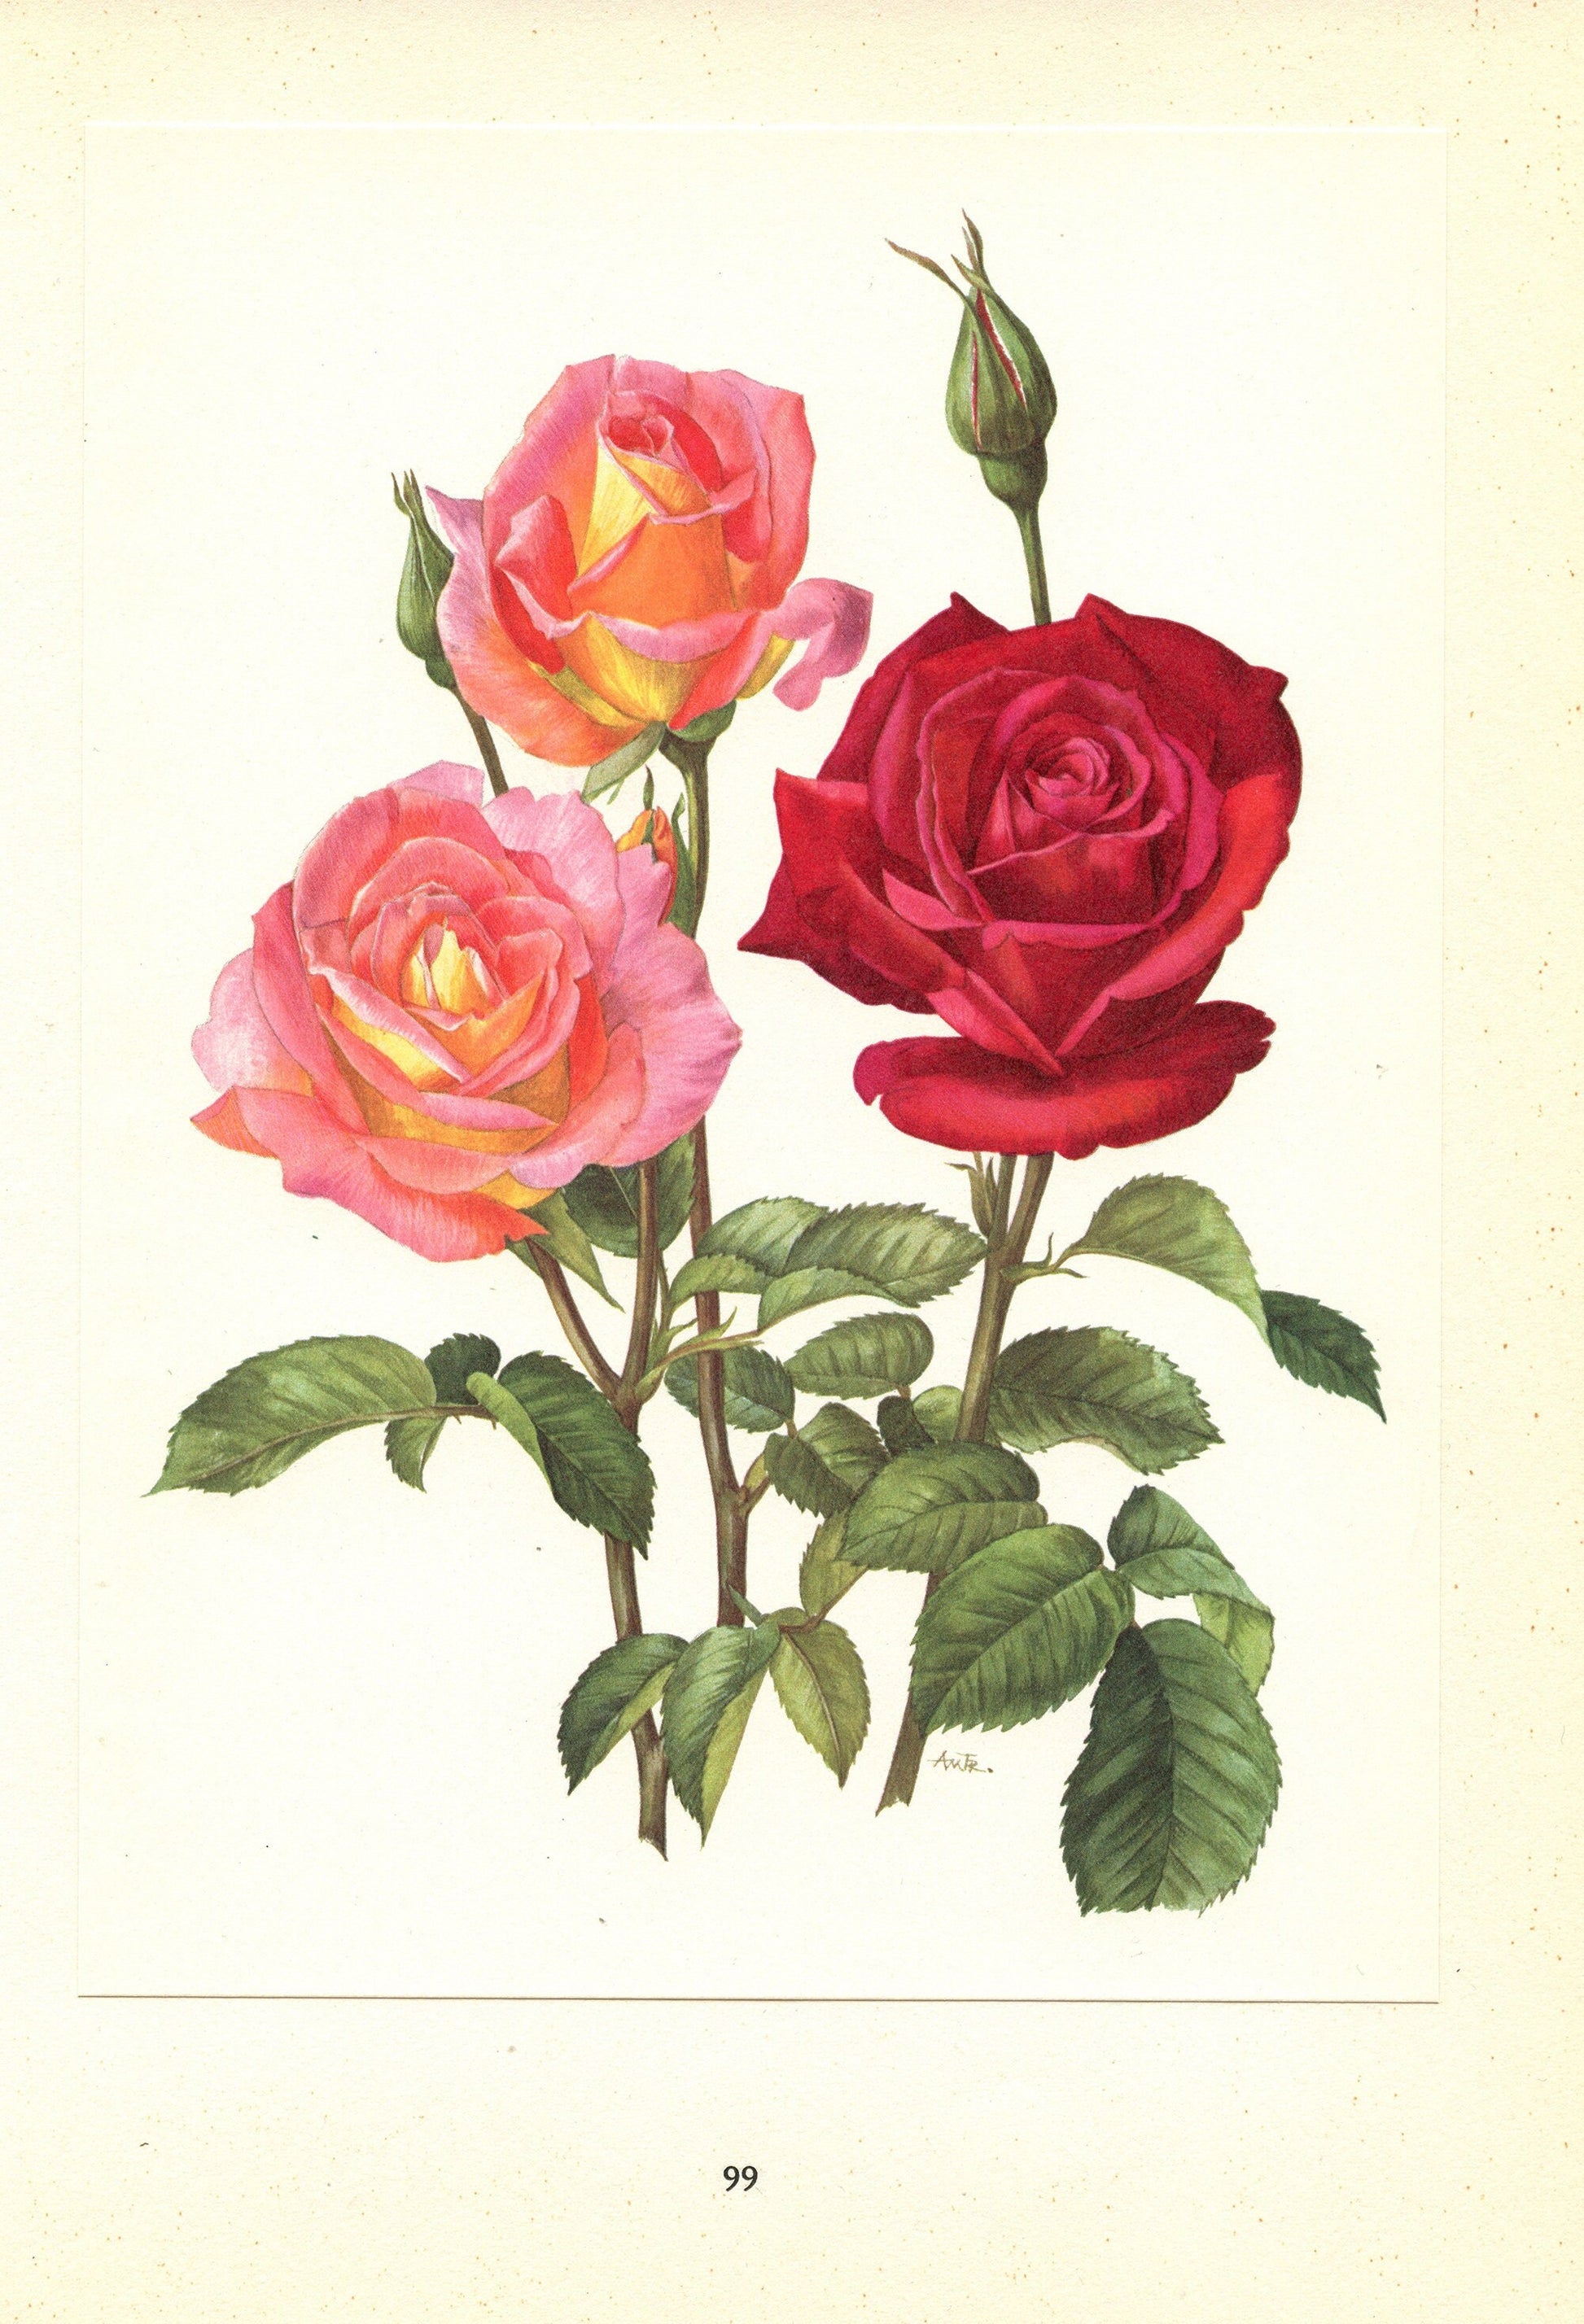 1962 Chrysler Imperial & Love Song Roses Botanical art